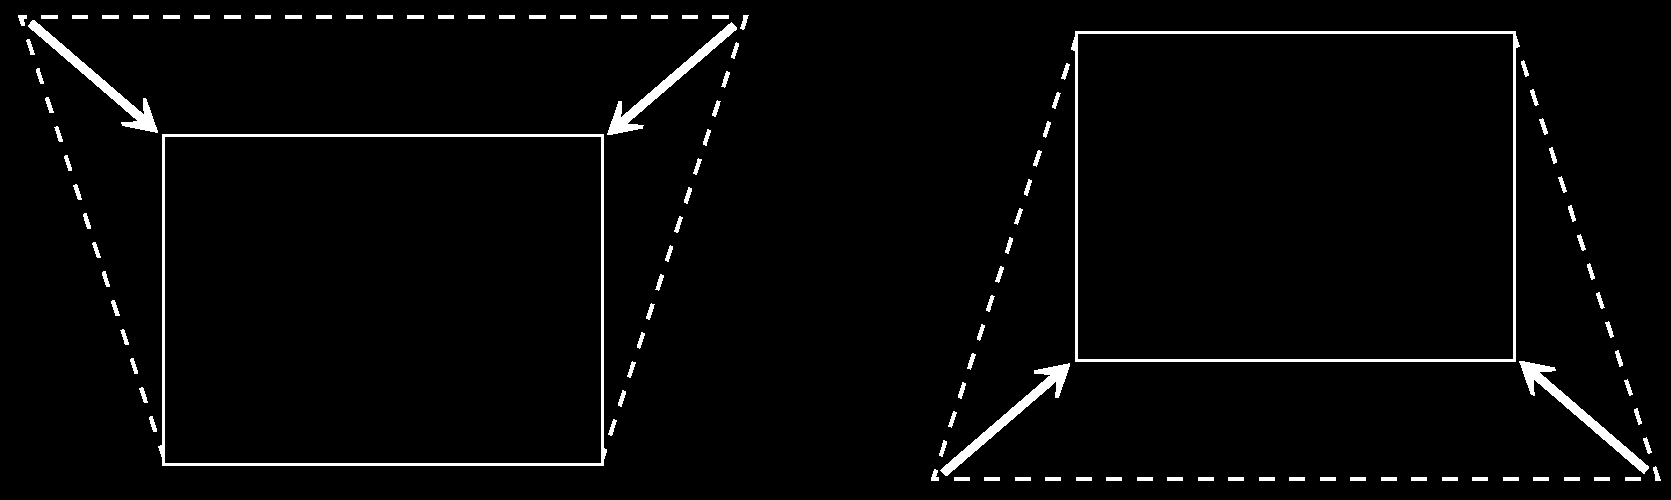 Korekcja efektu trapezowego Jeśli projektor będzie pochylony w stosunku do ekranu, obraz będzie zdeformowany jego krawędzie będą miały kształt trapezu.